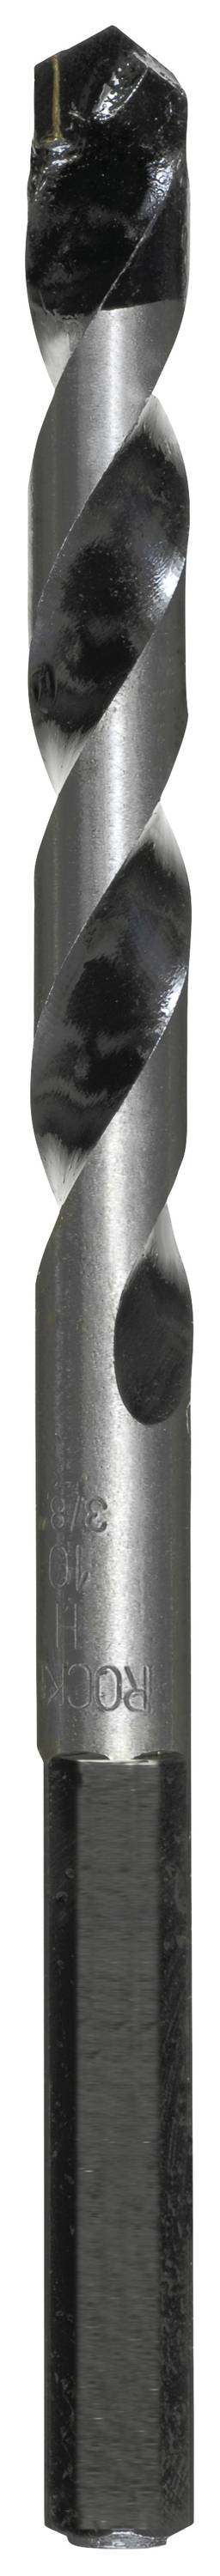 KWB 050680 Hartmetall Beton-Spiralbohrer 8.0 mm Gesamtlänge 132 mm Zylinderschaft 1 Stück (050680)